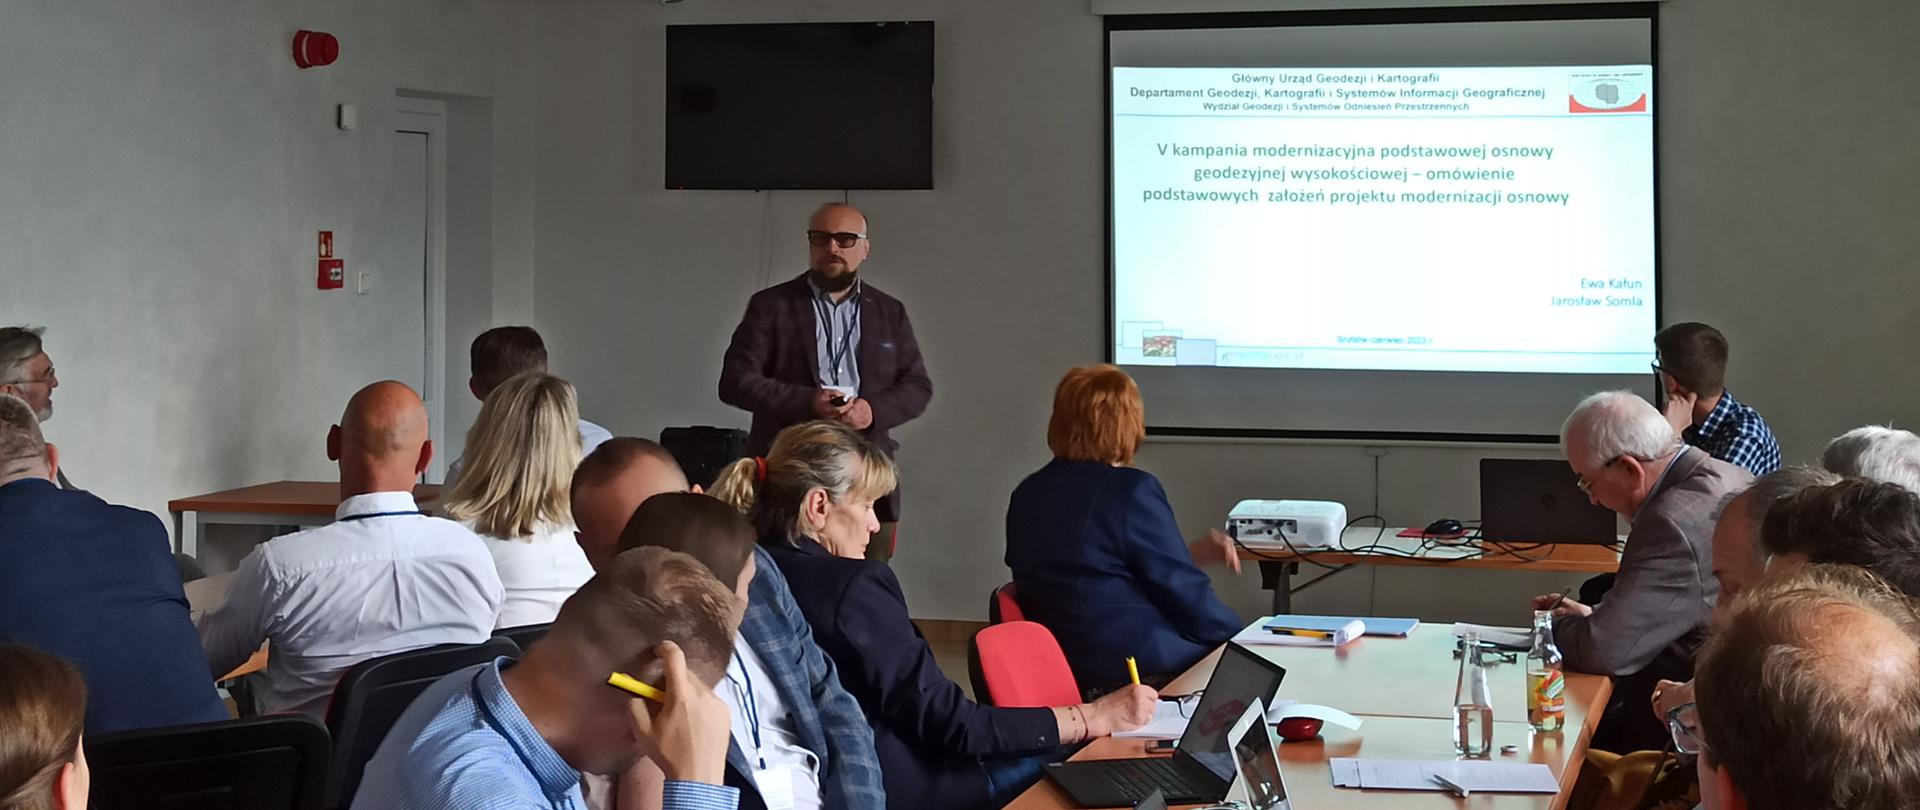 Na zdjęciu Jarosław Somla, Naczelnik Wydzału GSOP w trakcie prezentacji na temat V kampanii modernizacyjnej podstawowej osnowy wysokościowej.